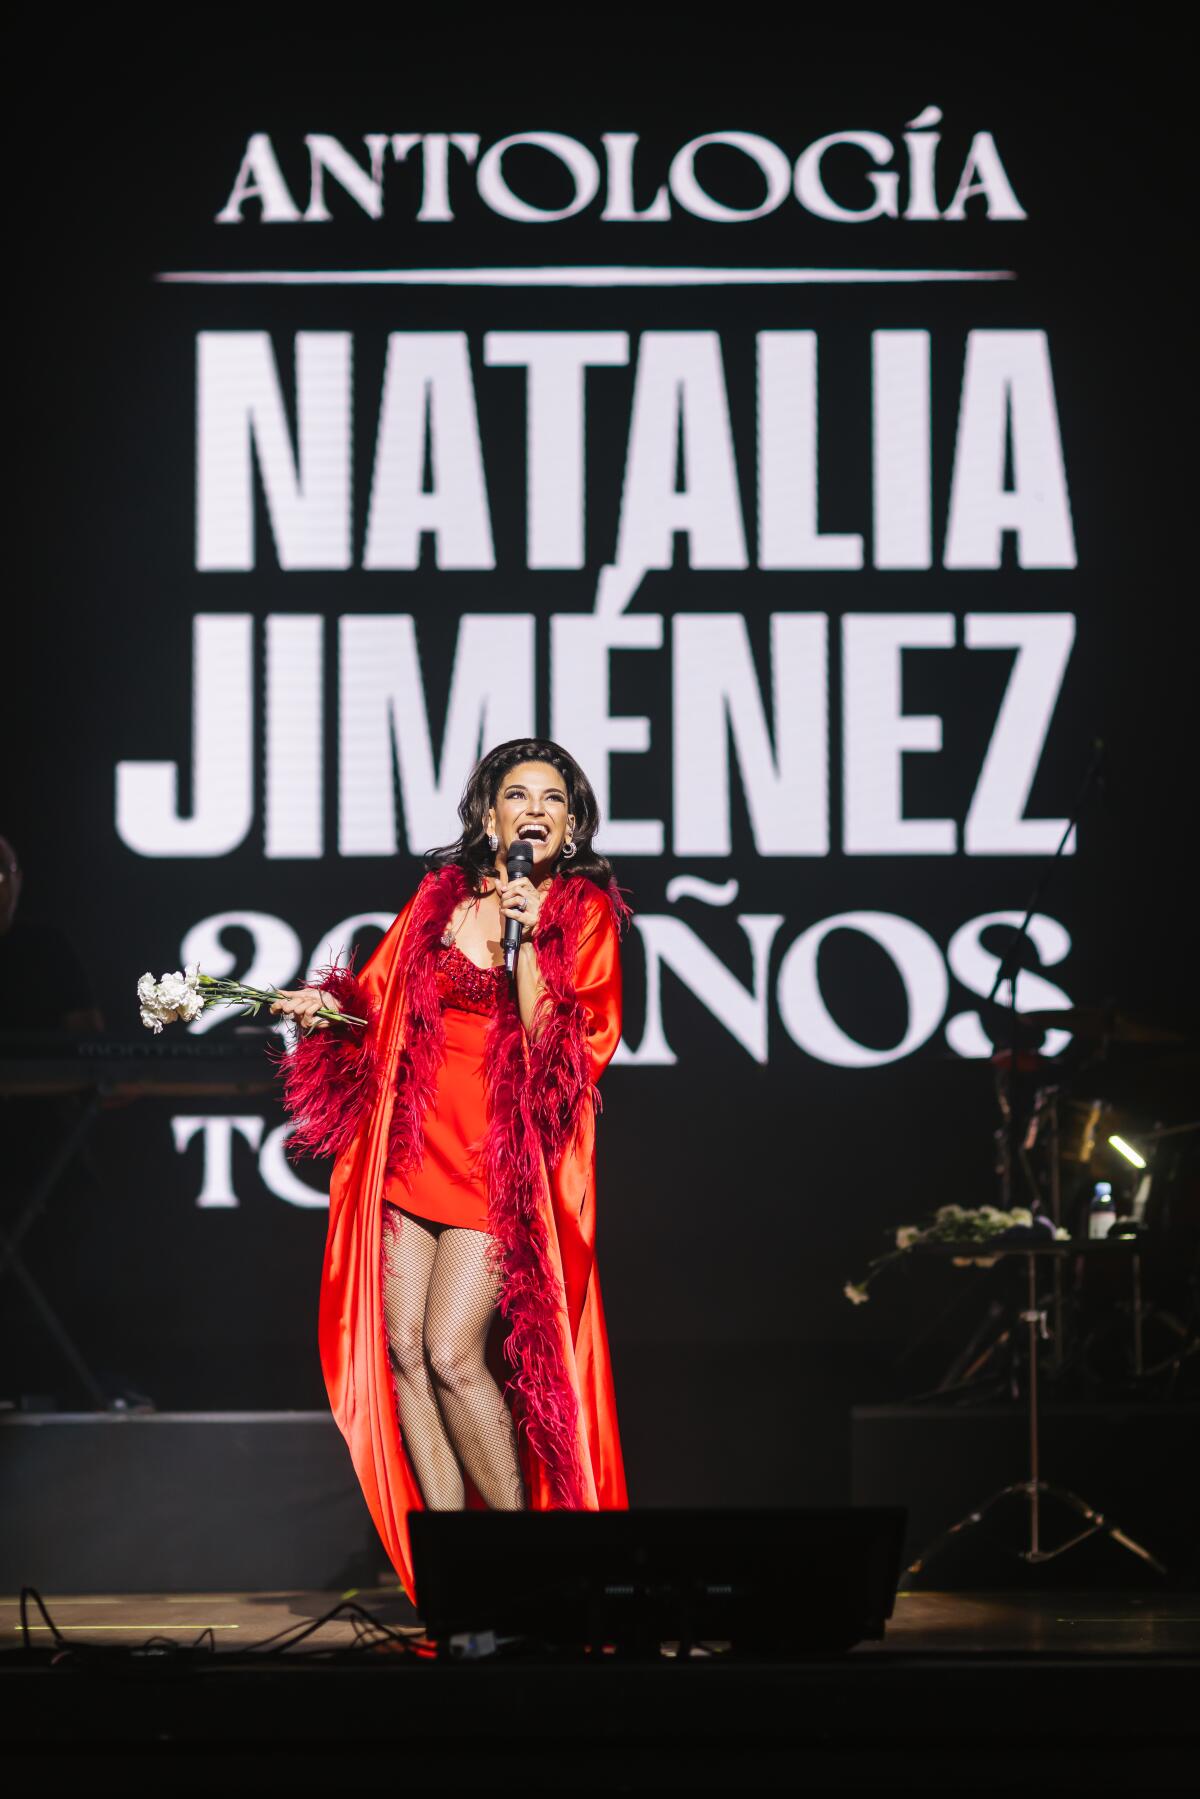 20 años de éxitos, experiencias y satisfacciones son las que vive Natalia Jiménez con su tour Antología.